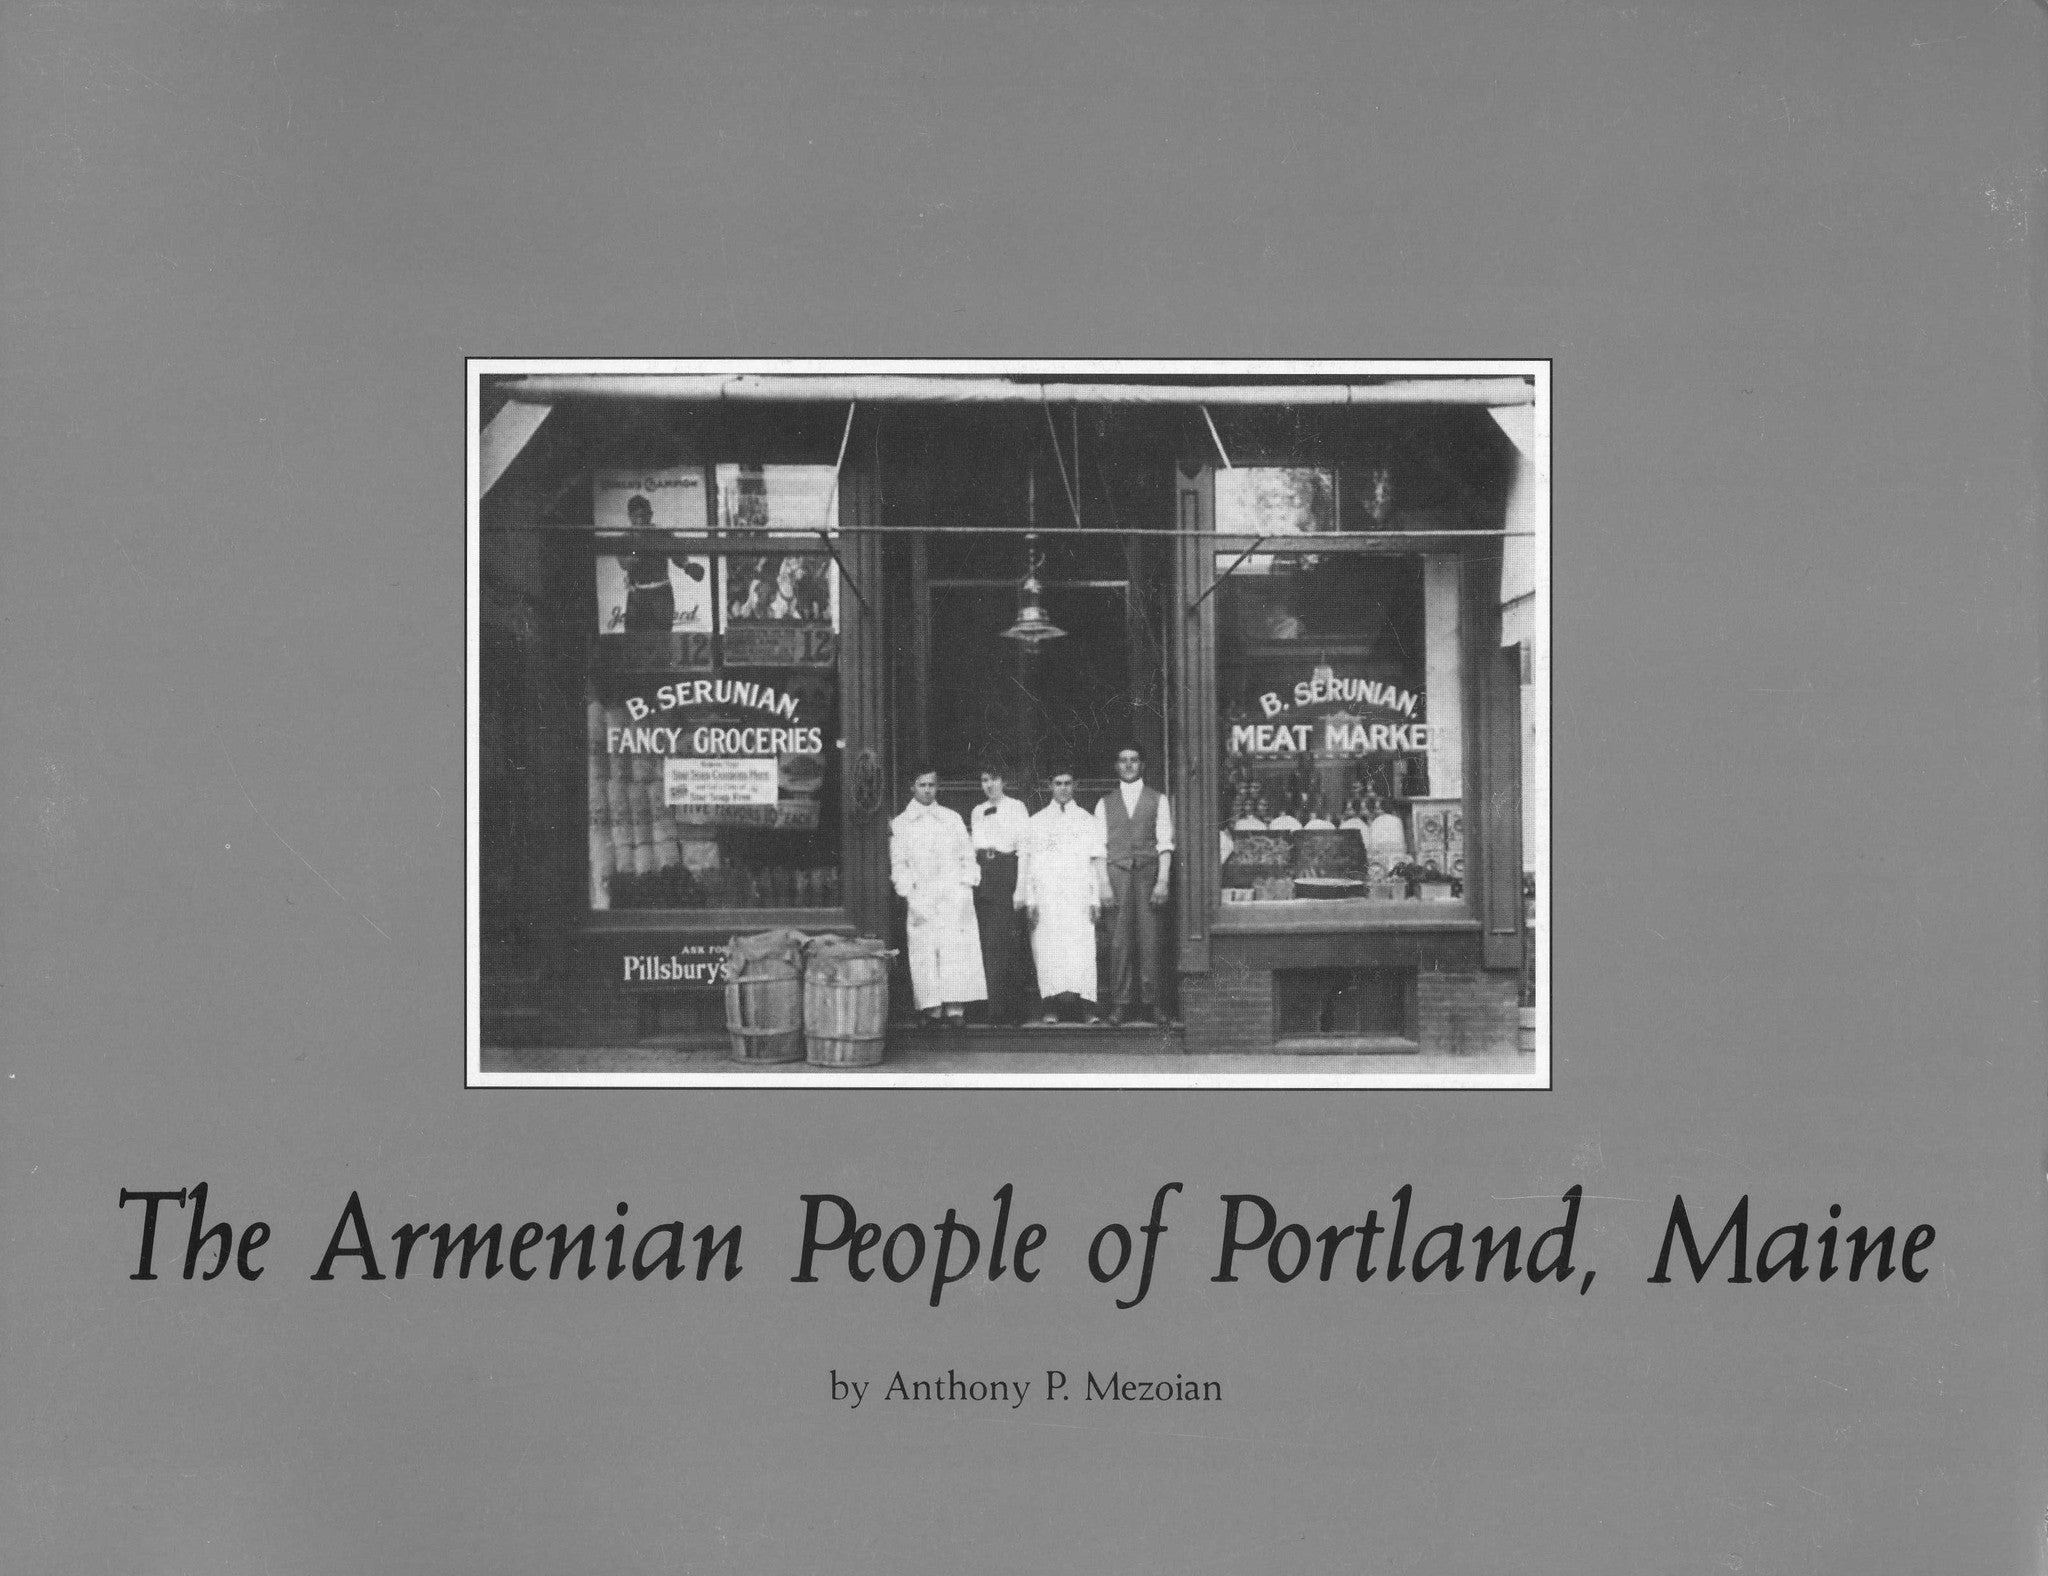 ARMENIAN PEOPLE OF PORTLAND